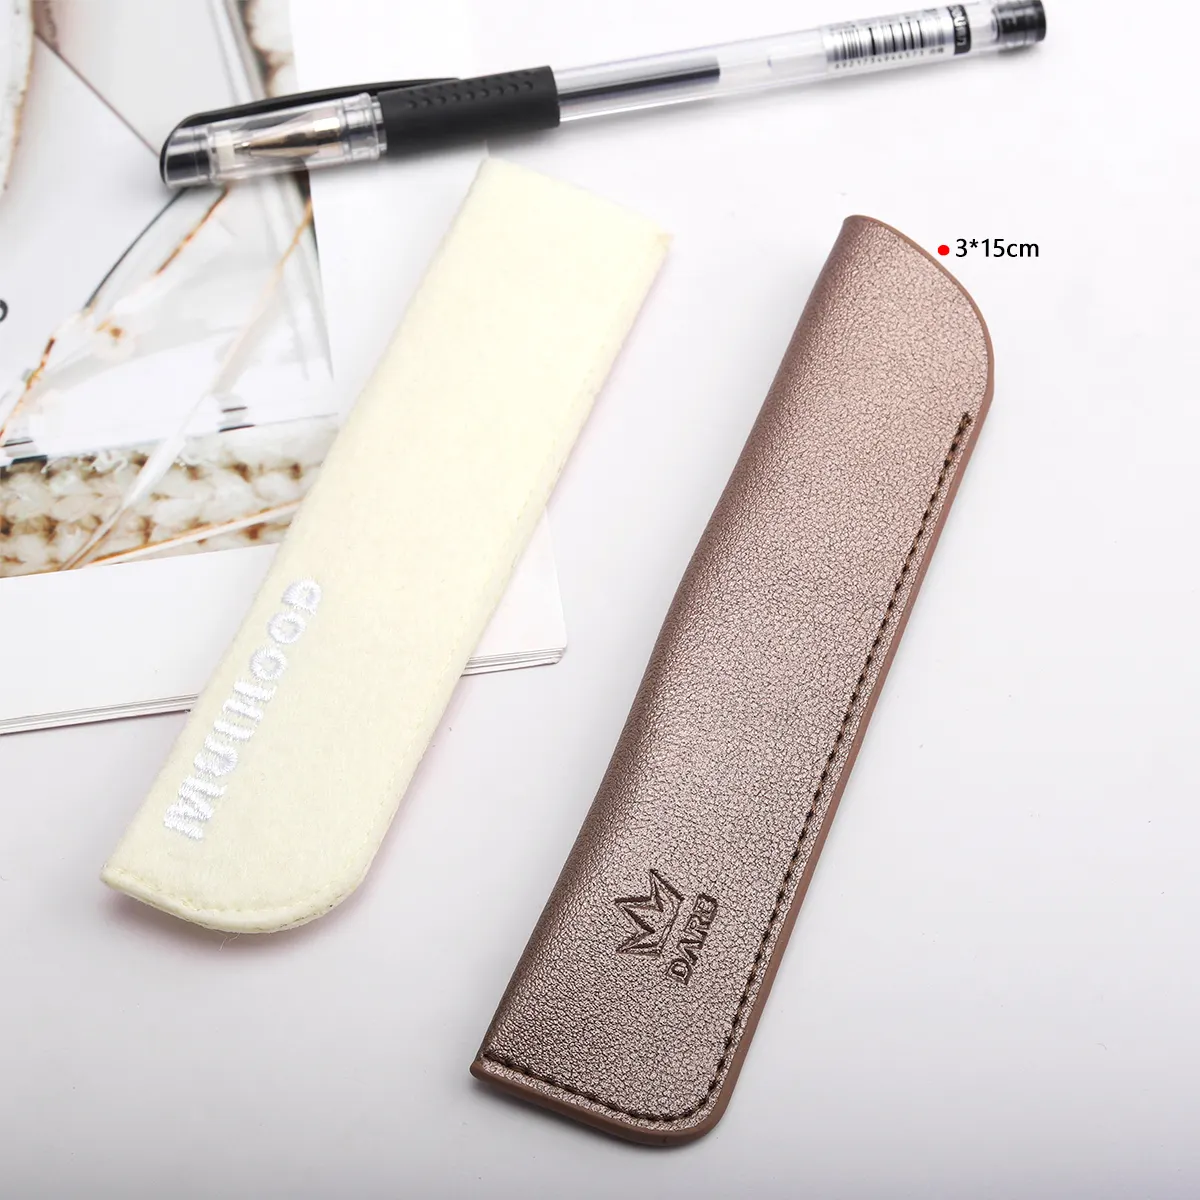 Fabrika doğrudan satış Pu deri moda kullanımlık kalem çantası özel tasarım Logo taşınabilir makyaj kalem deri çanta